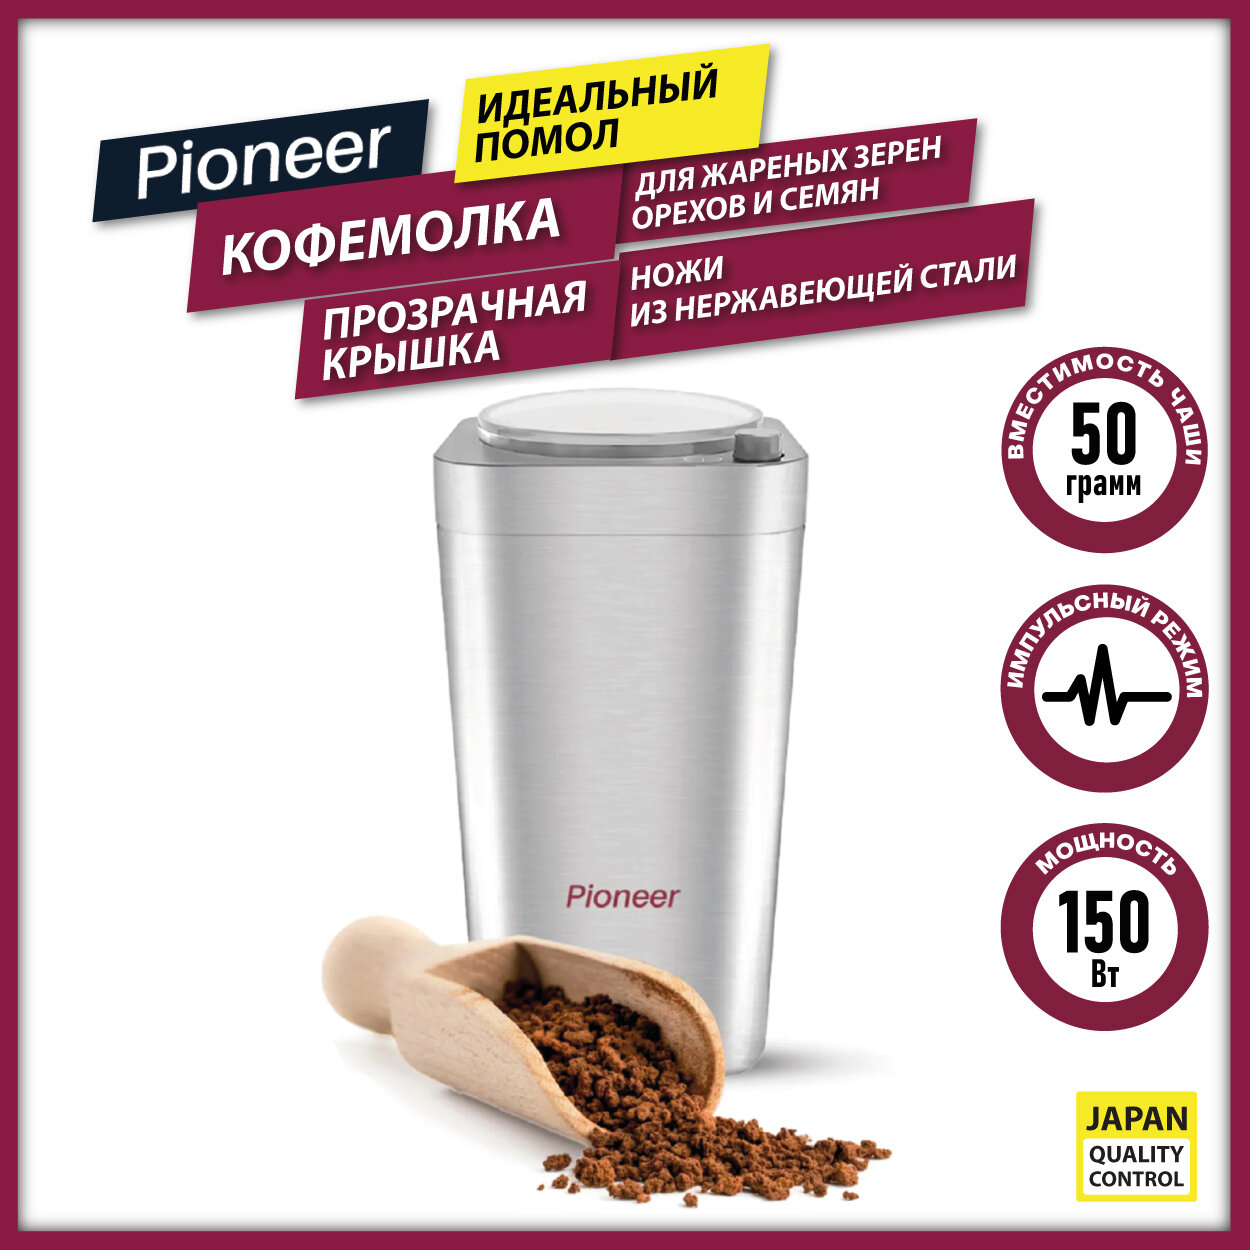 Кофемолка Pioneer CG217 с возможностью измельчения орехов семян и импульсным режимом 150 Вт